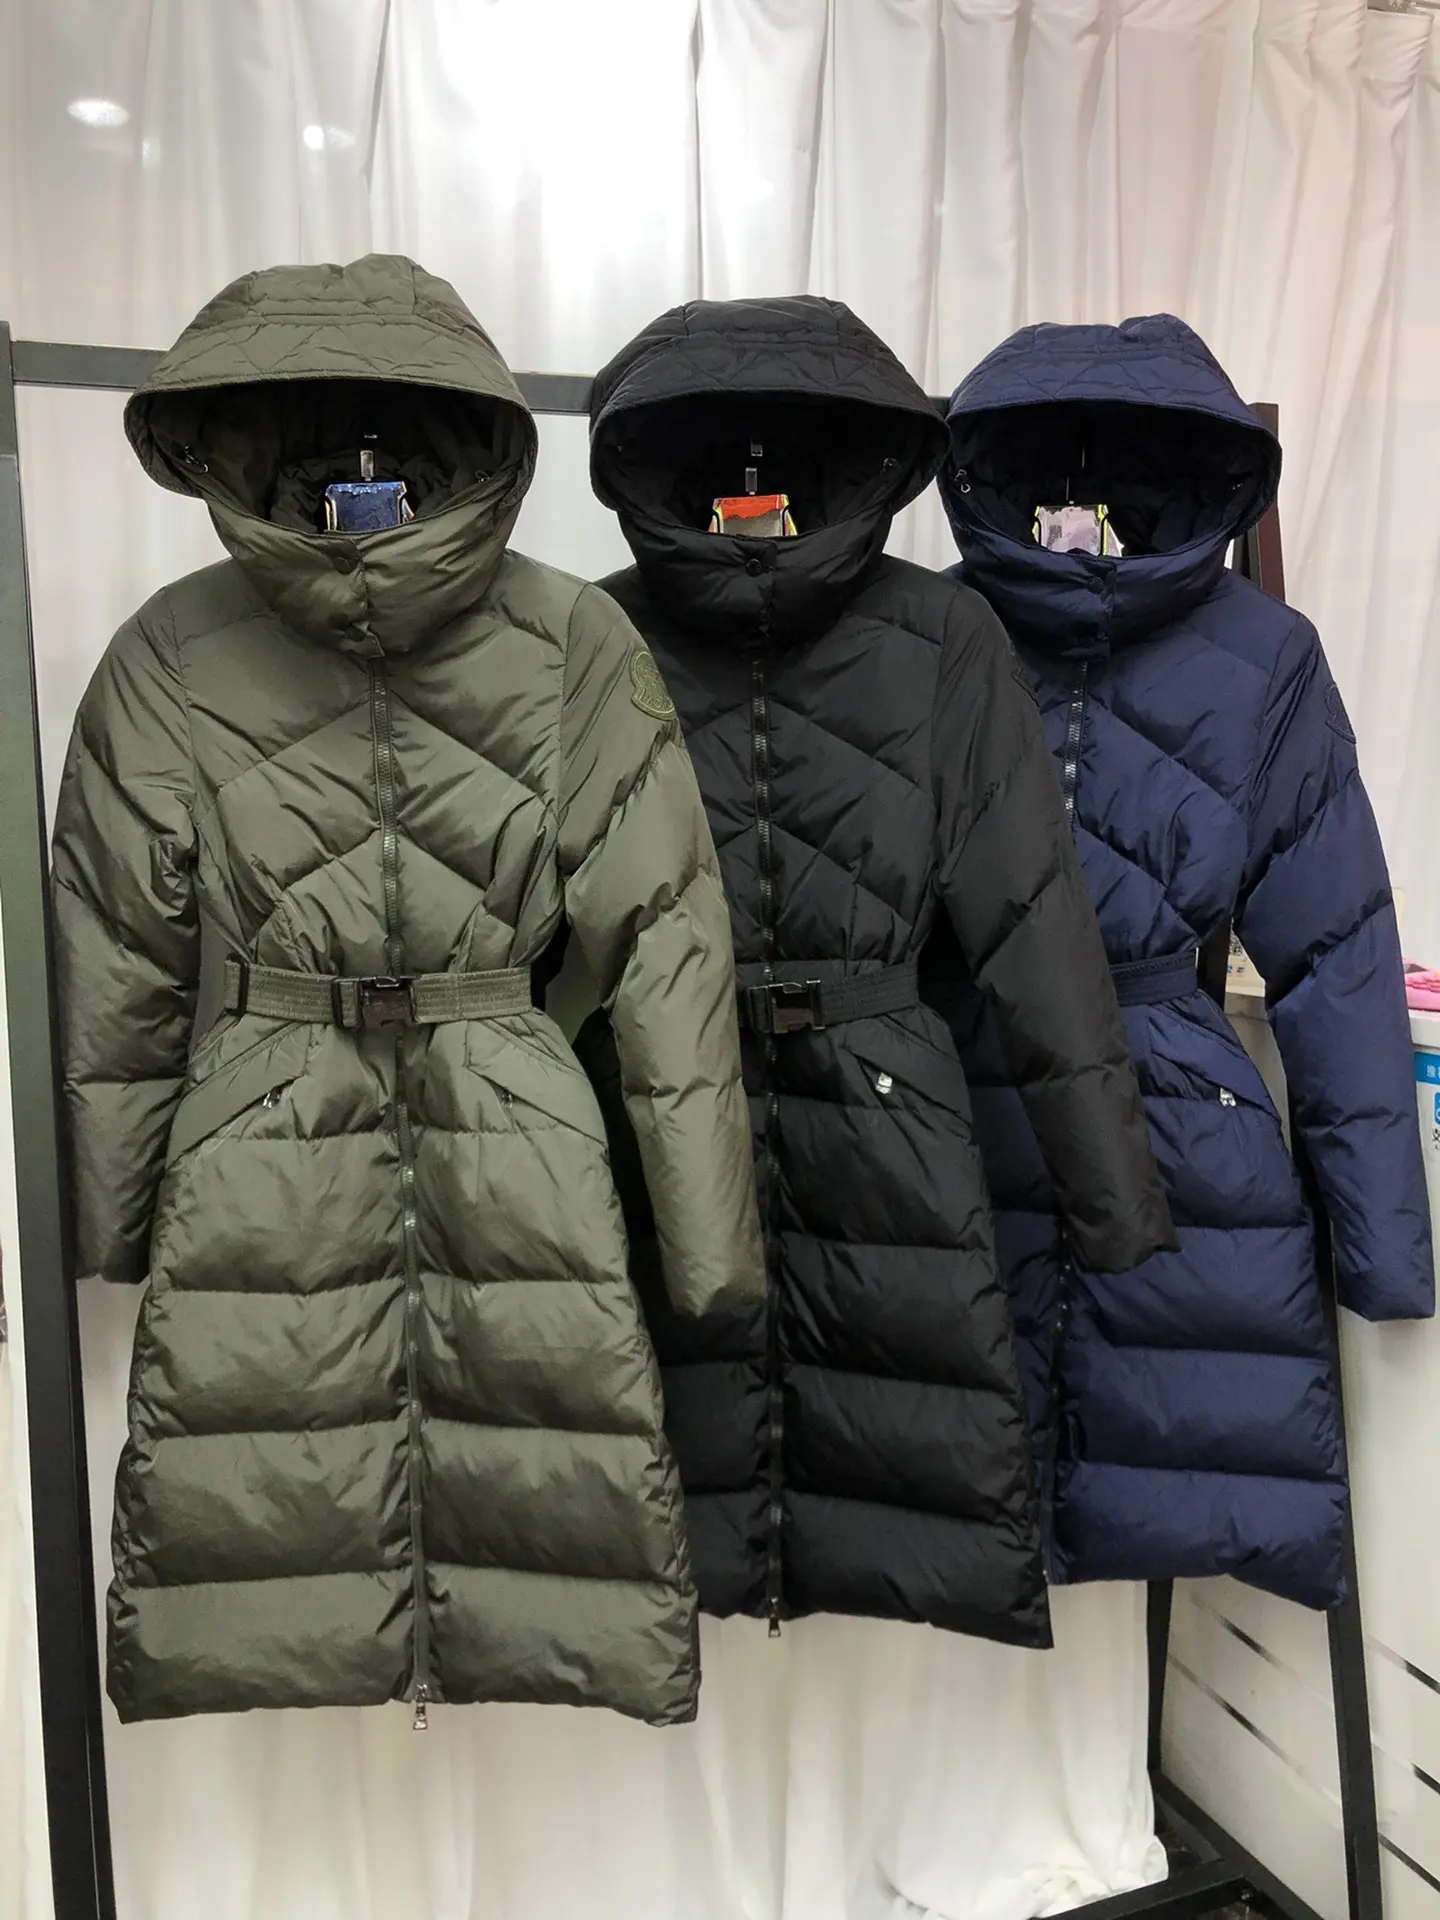 Moncler fashion down jacket TS22927102